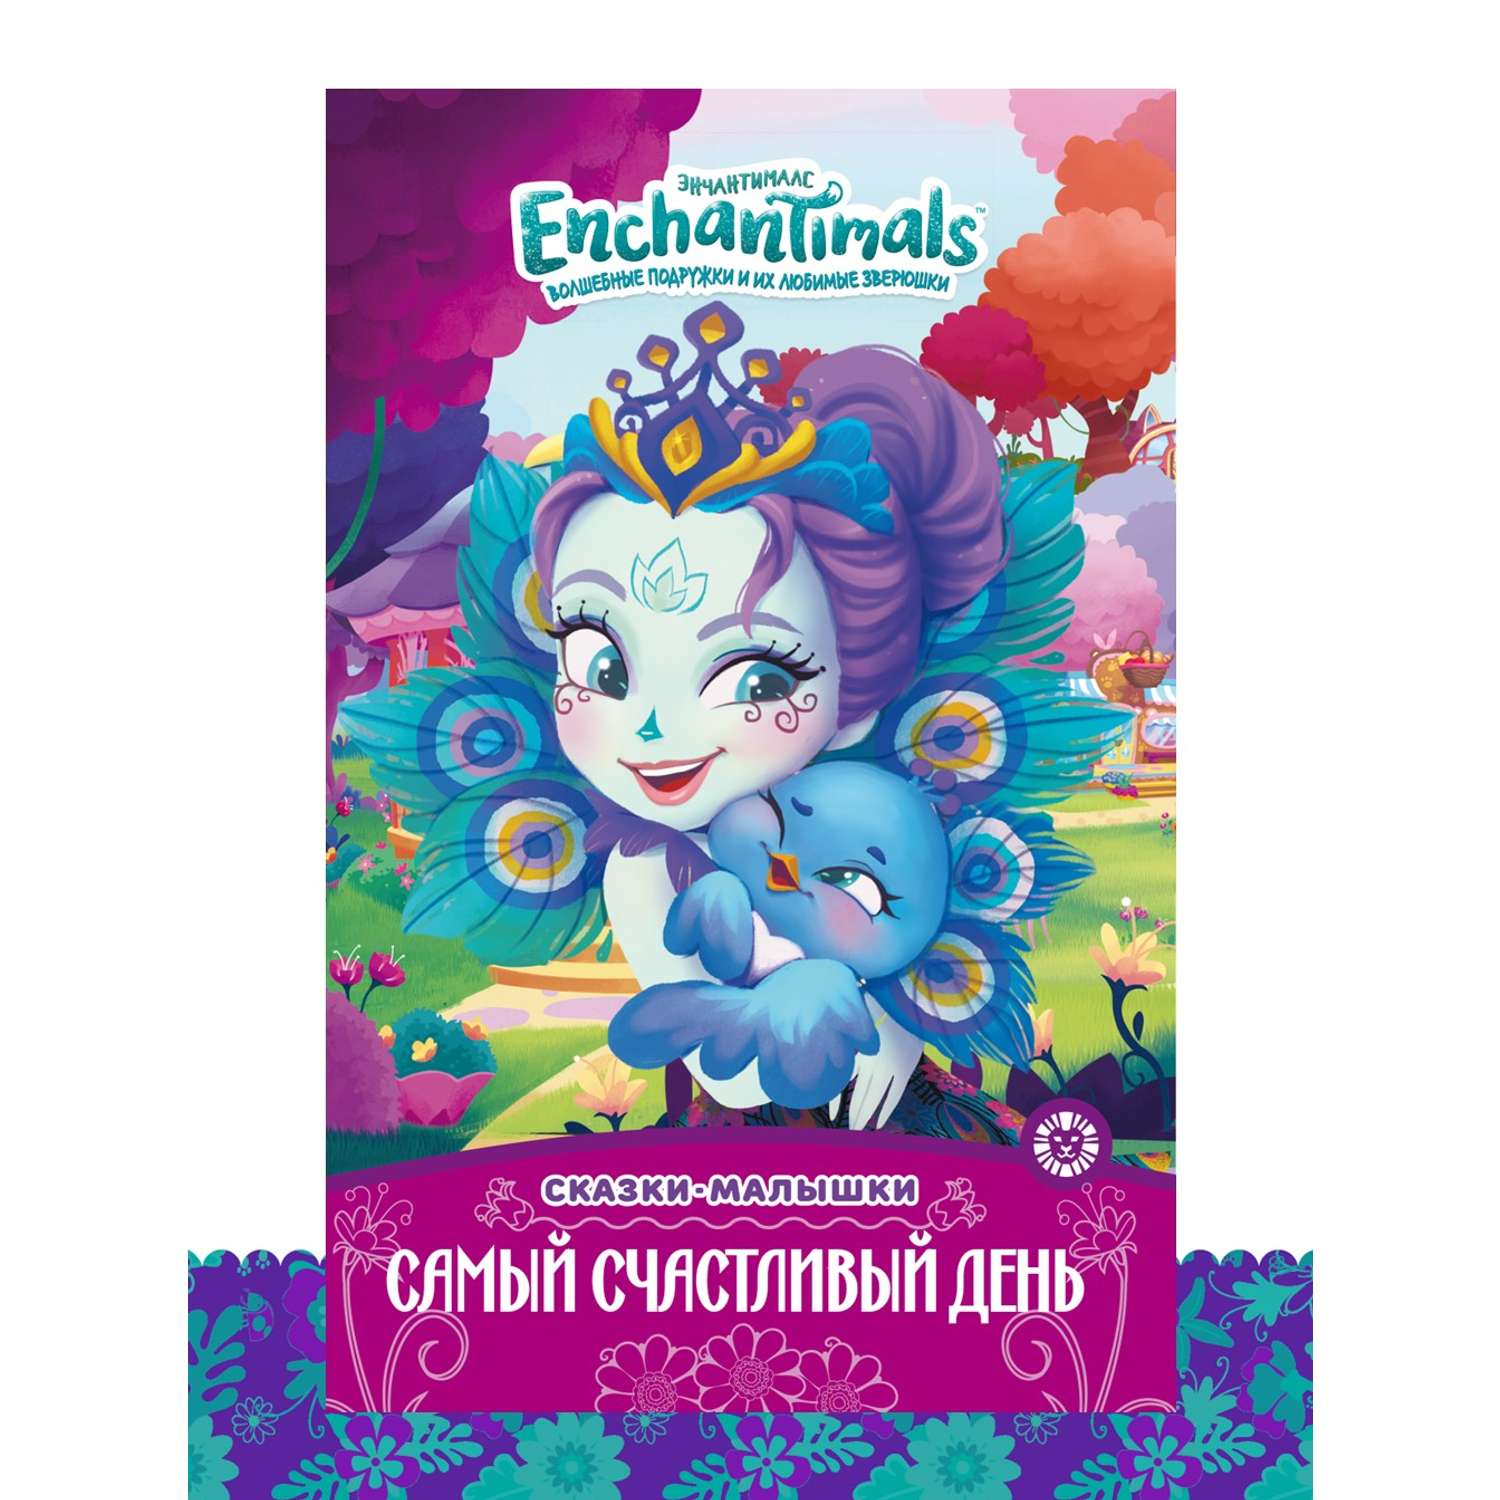 Комплект Enchantimals Книжки для чтения 4 шт + Раскраска - фото 11